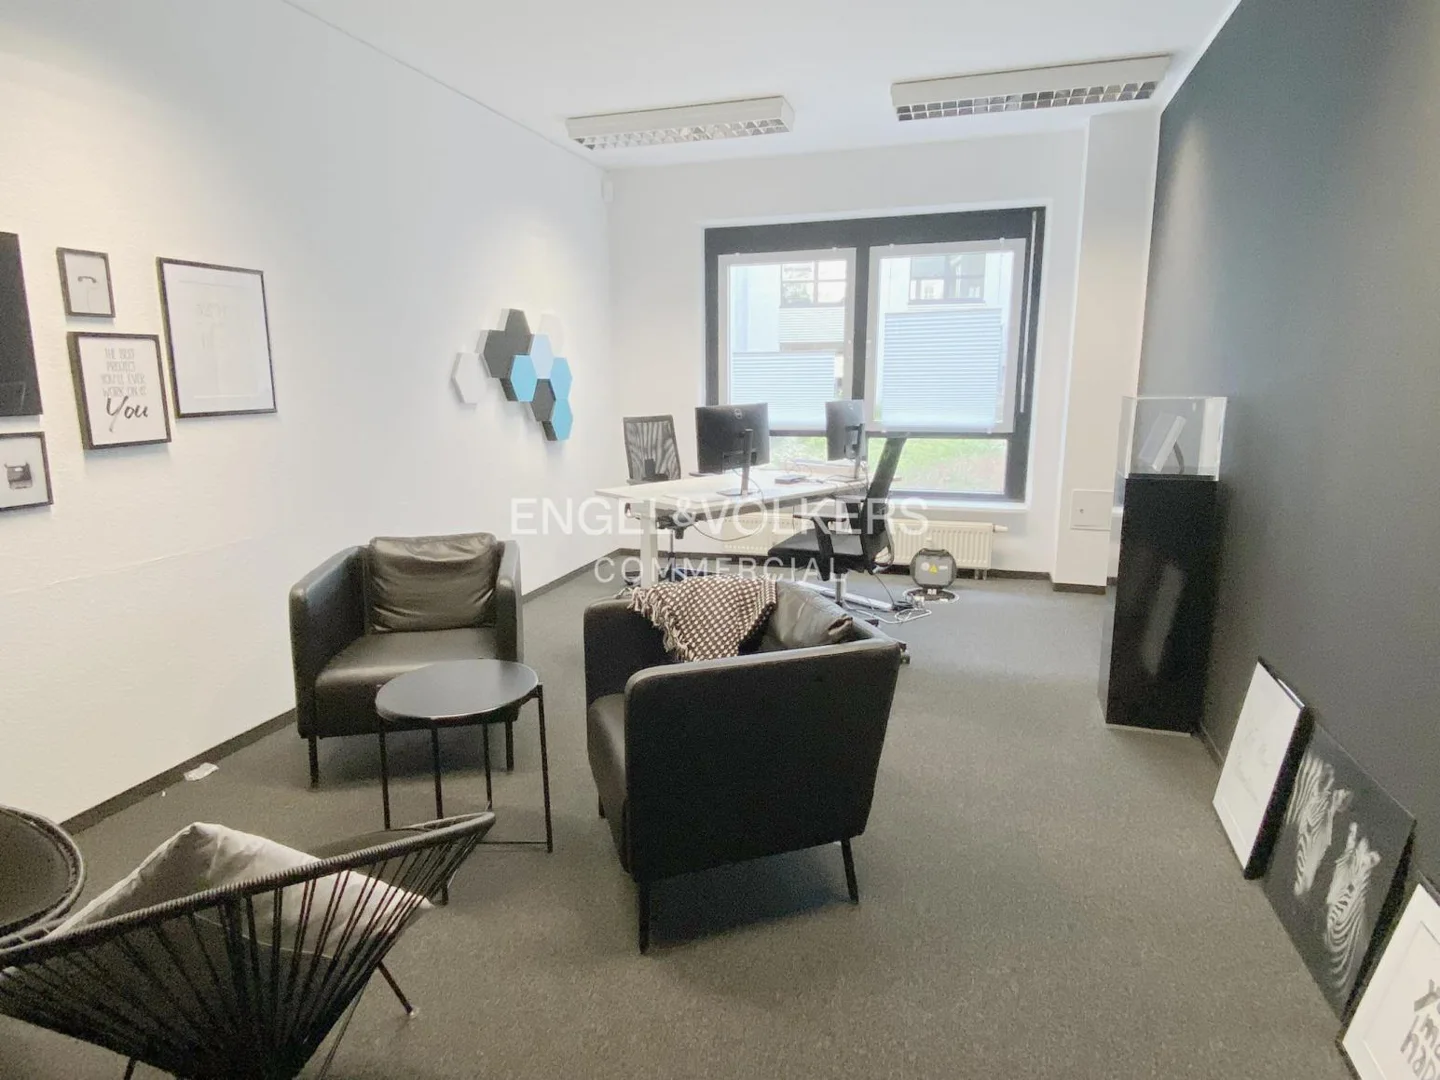 Ein neues Büro in Friedrichshain